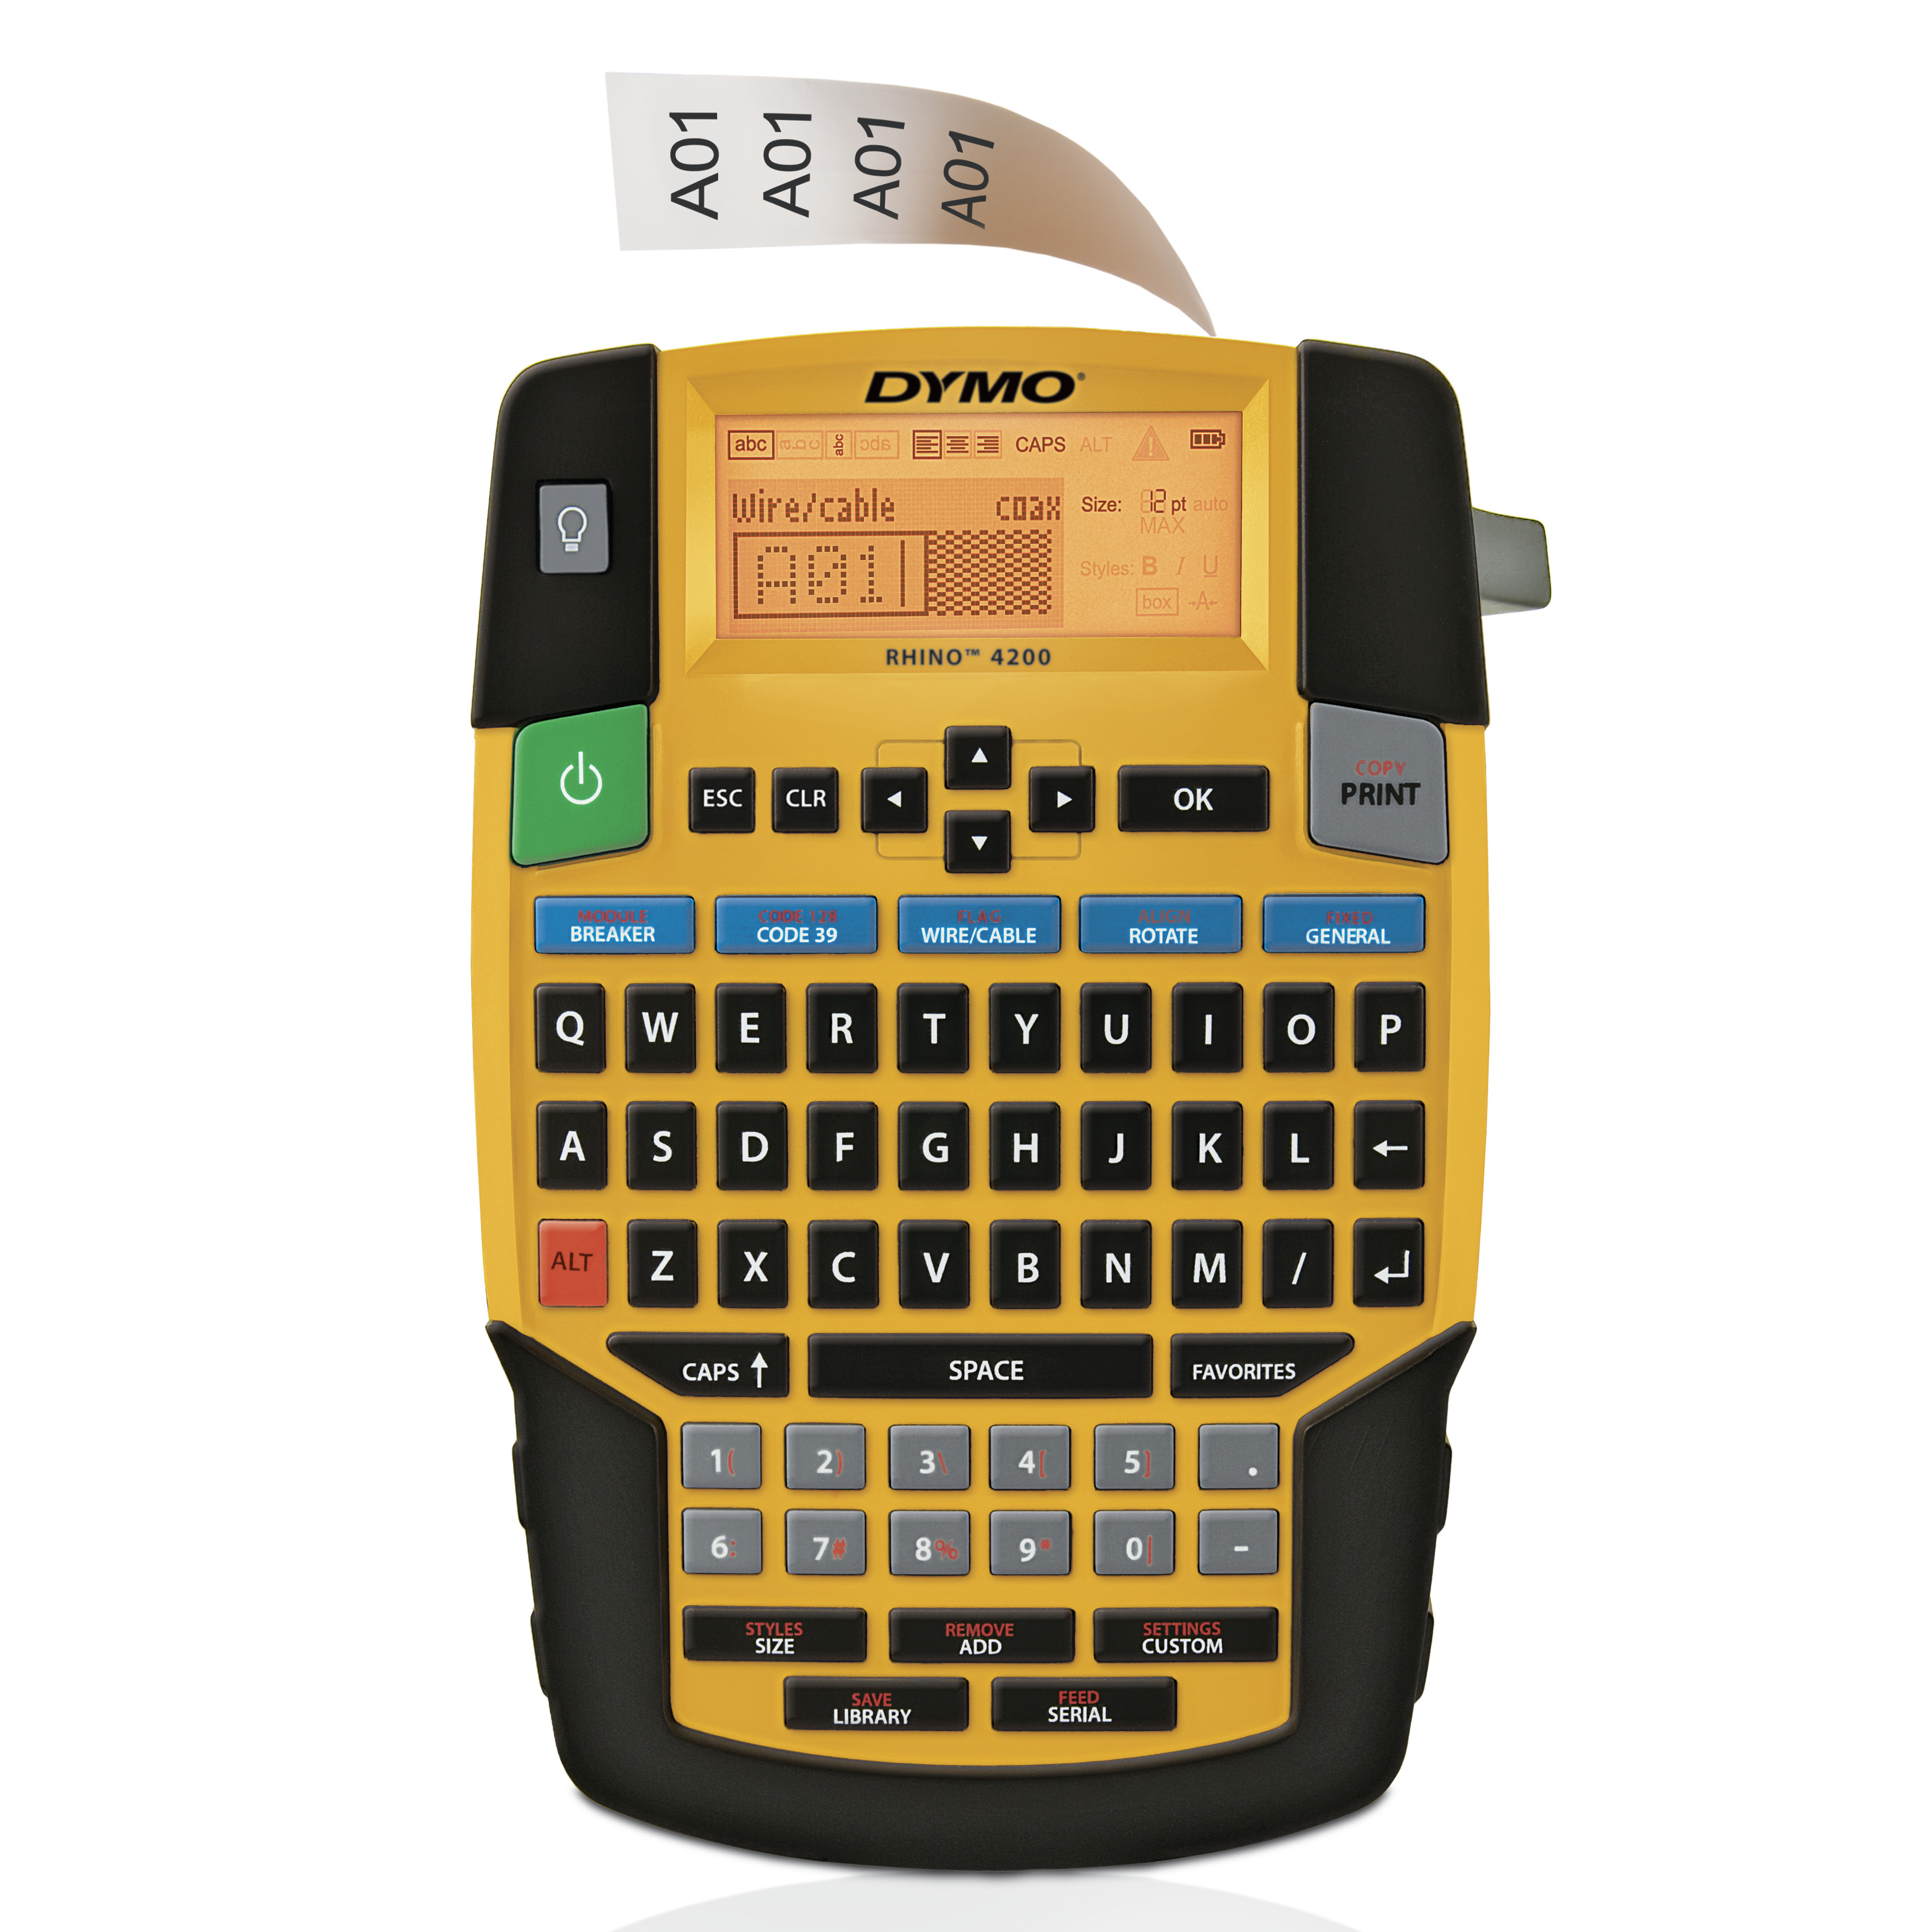 DYMO | Rhino 4200 - Industrielles Beschriftungsgerät | QWERTZ-Tastatur | im KofferSet